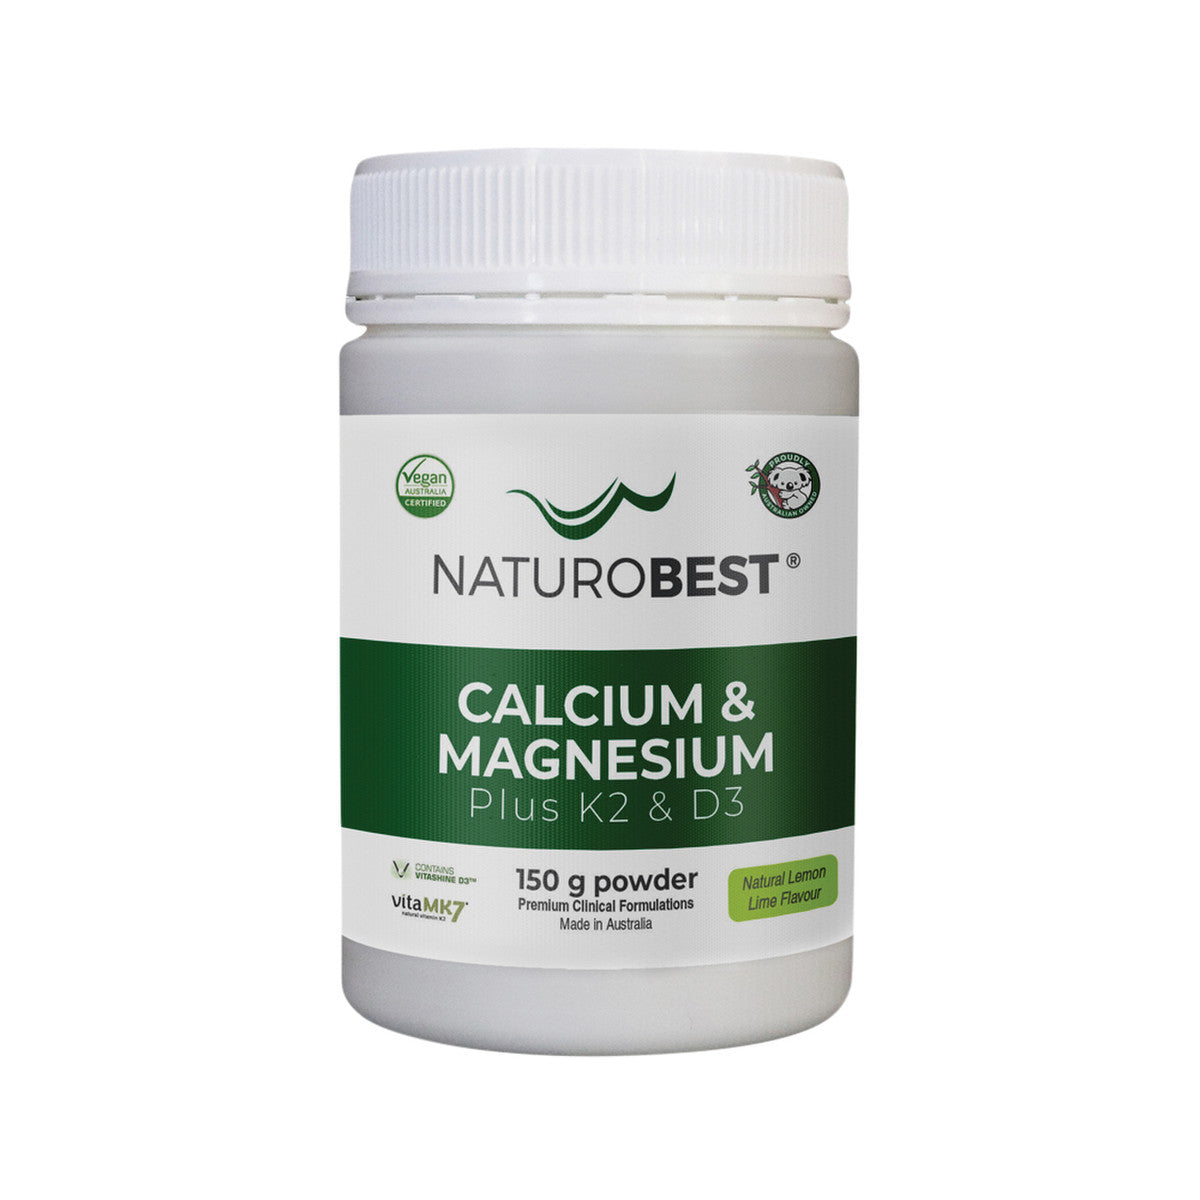 NaturoBest Calcium and Magnesium Plus K2 and D3 150g